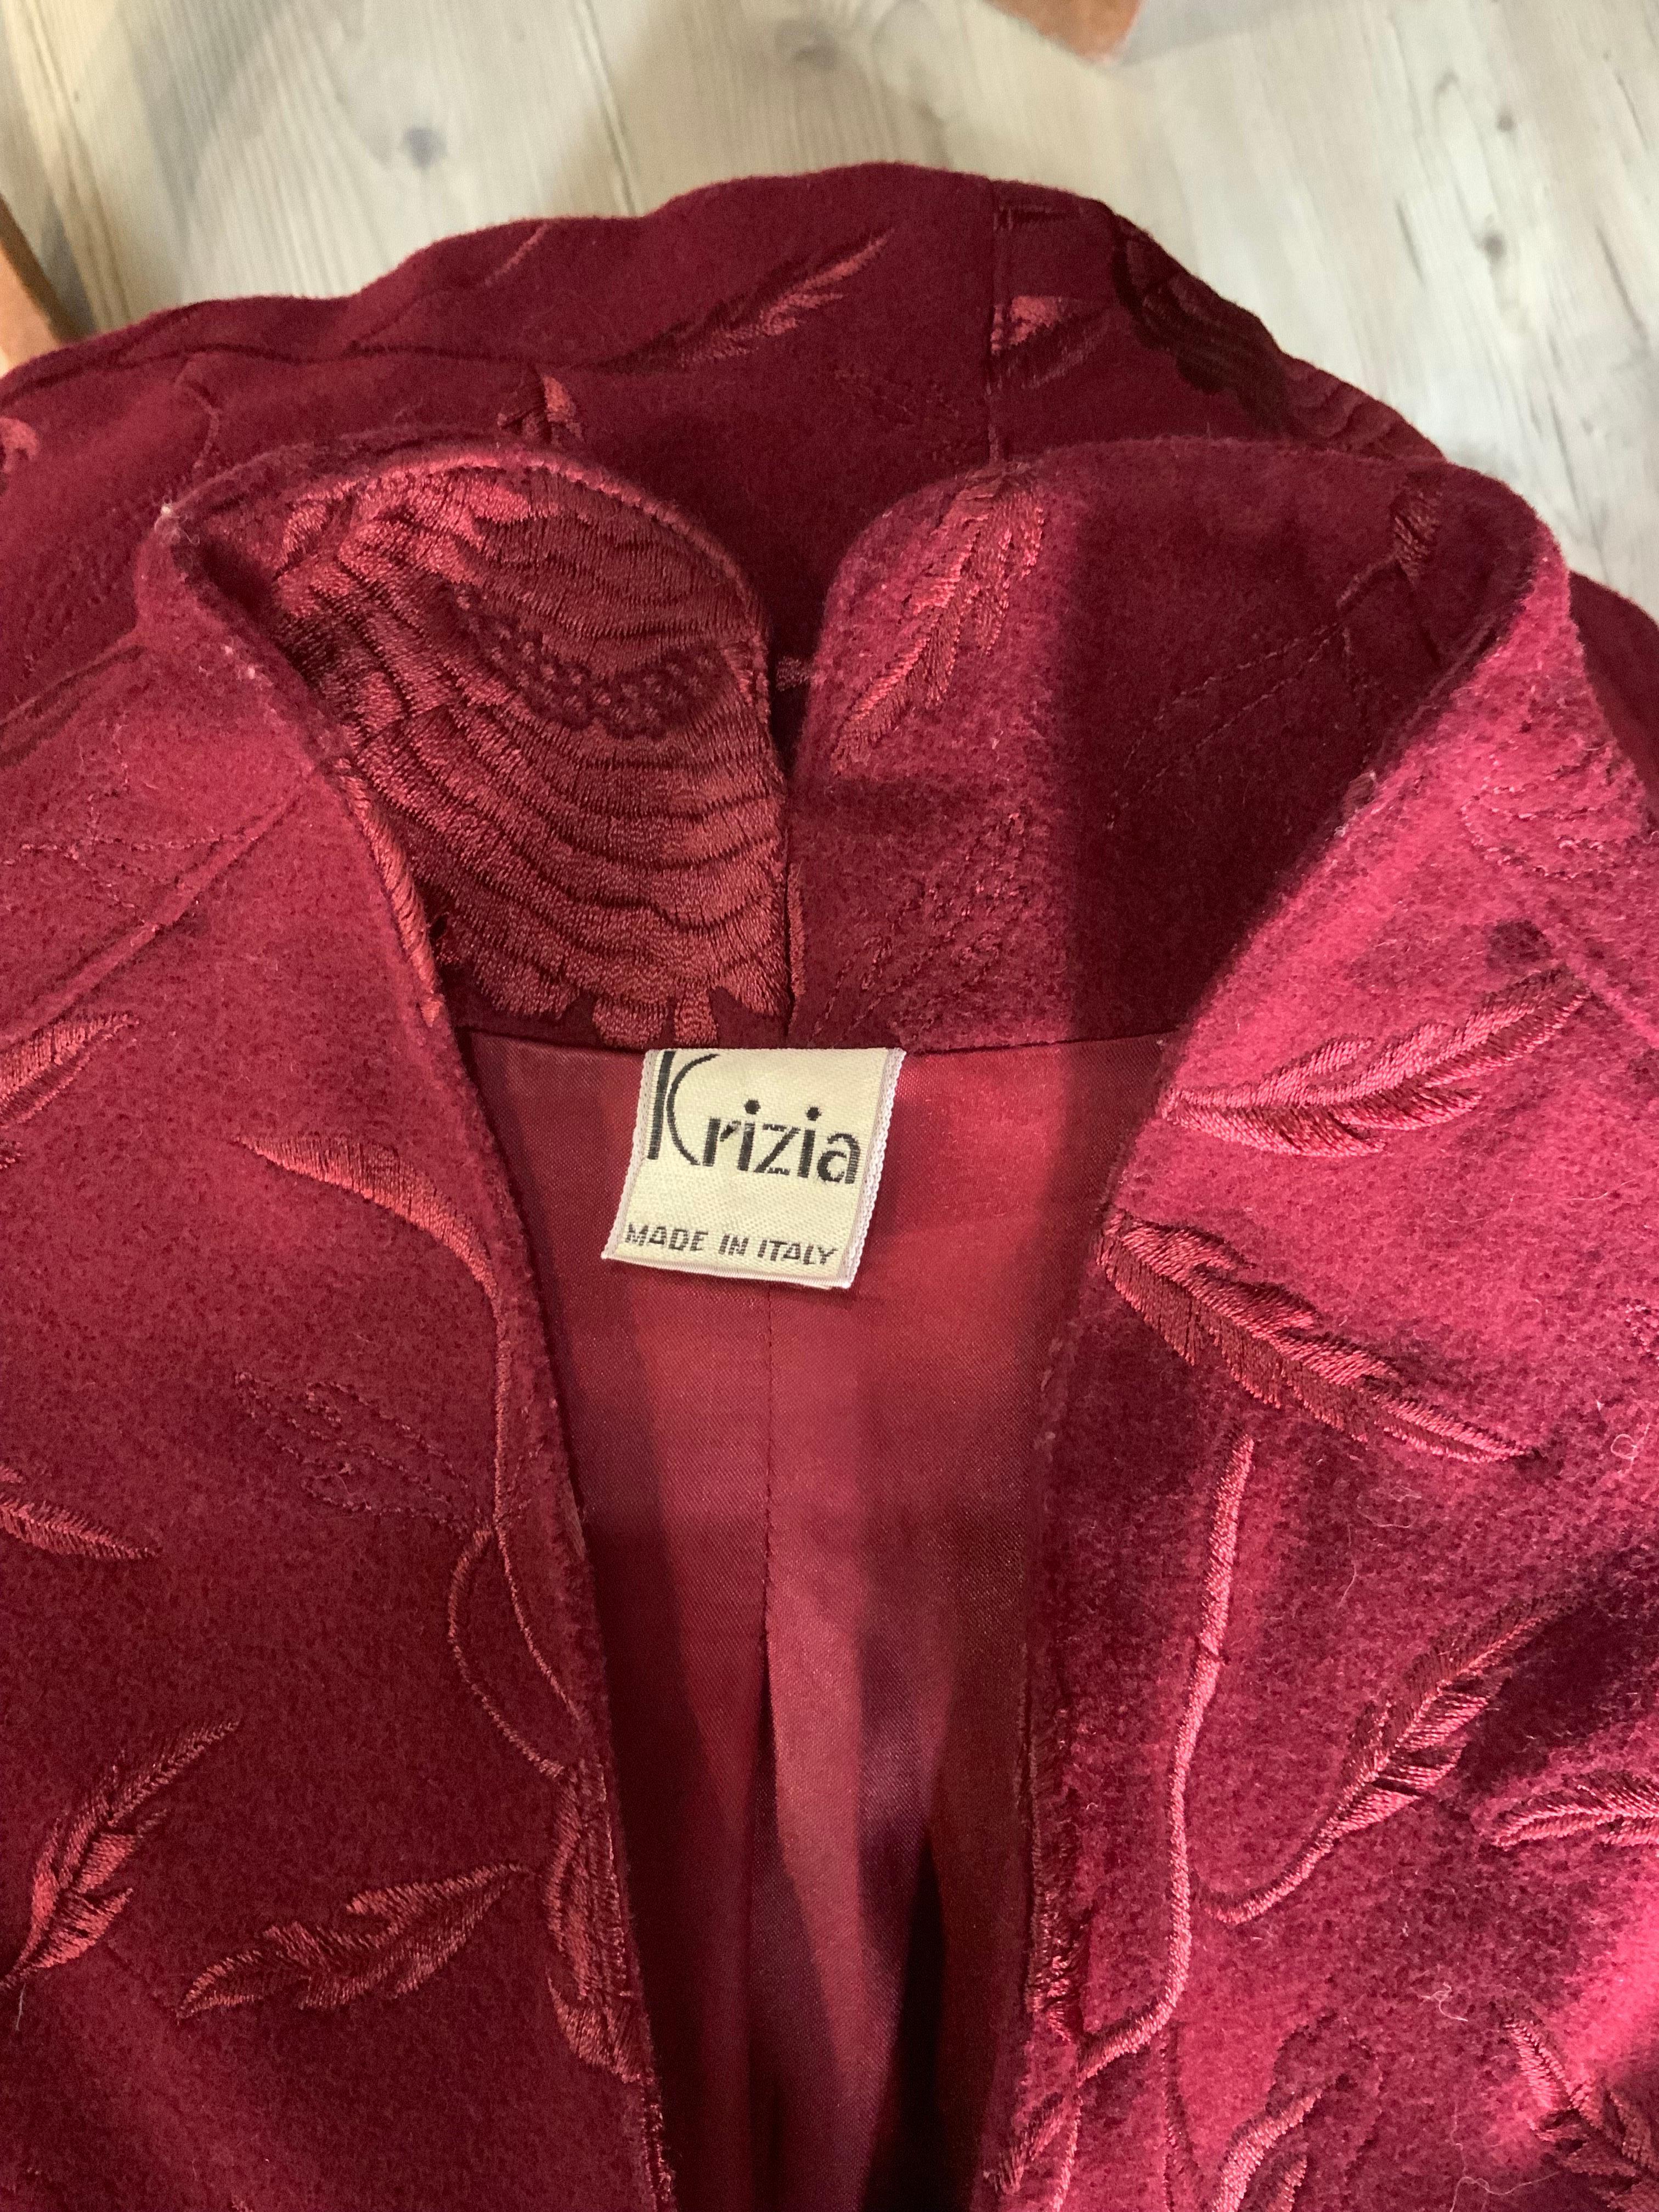 Krizia bordeaux embroidery jacket For Sale 3